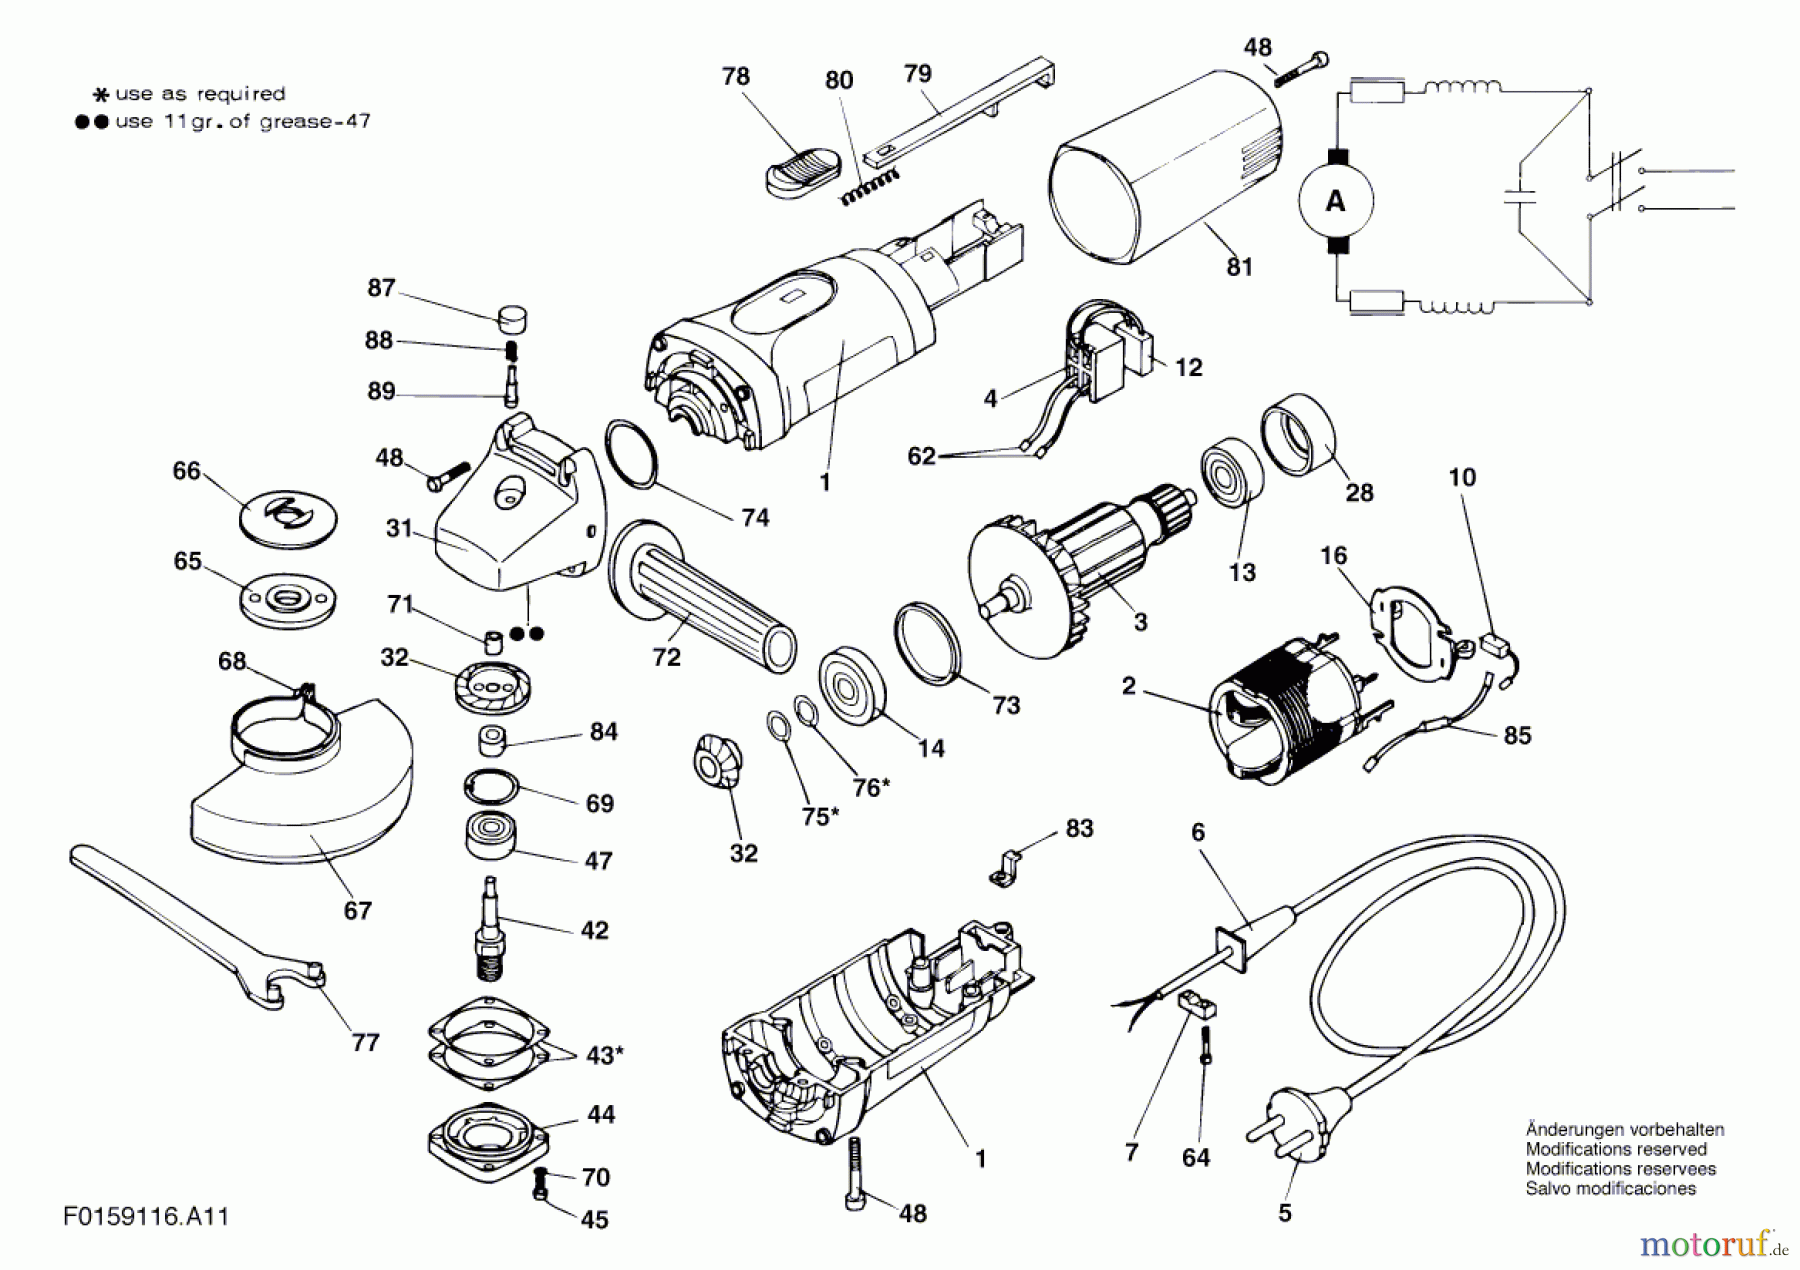  Bosch Werkzeug Hw-Winkelschleifer 9116 H1 Seite 1